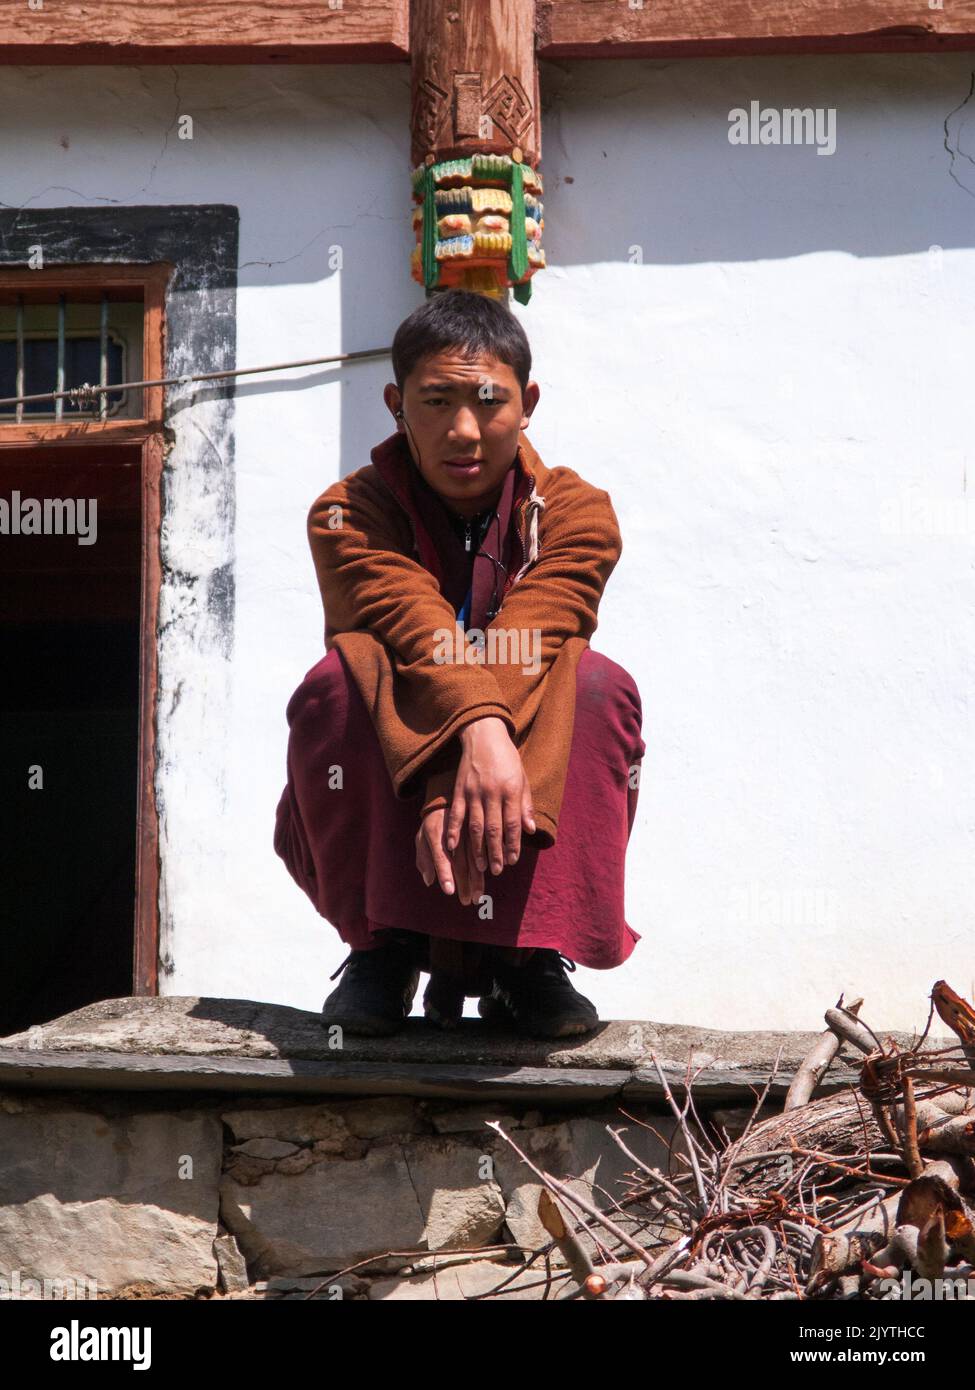 Ritratto di una persona locale del patrimonio tibetano, un adolescente o giovane adolescente, ma che vive in Cina, residenti di un piccolo villaggio fuori Songpan antica città nella provincia settentrionale del Sichuan. PRC. Cina (126) Foto Stock